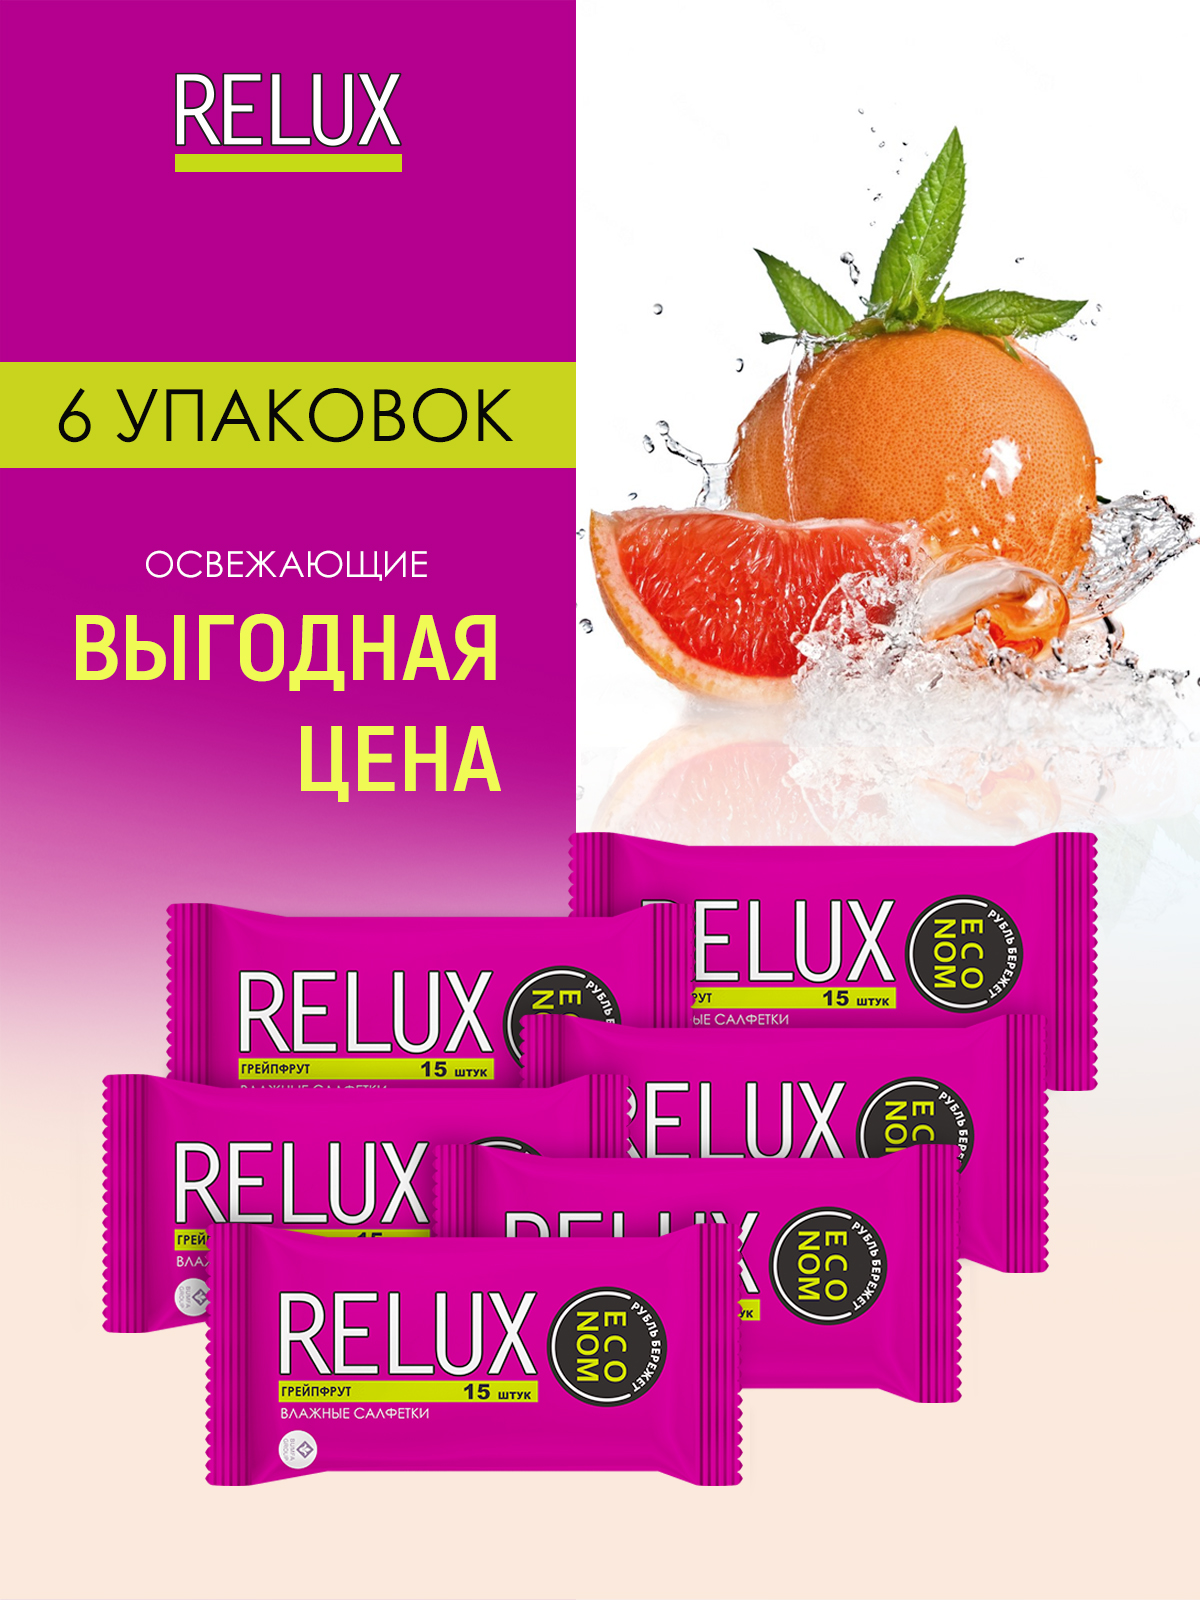 Салфетки влажные Relux освежающие грейпфрут 15шт 6 упаковок дикие мальчики